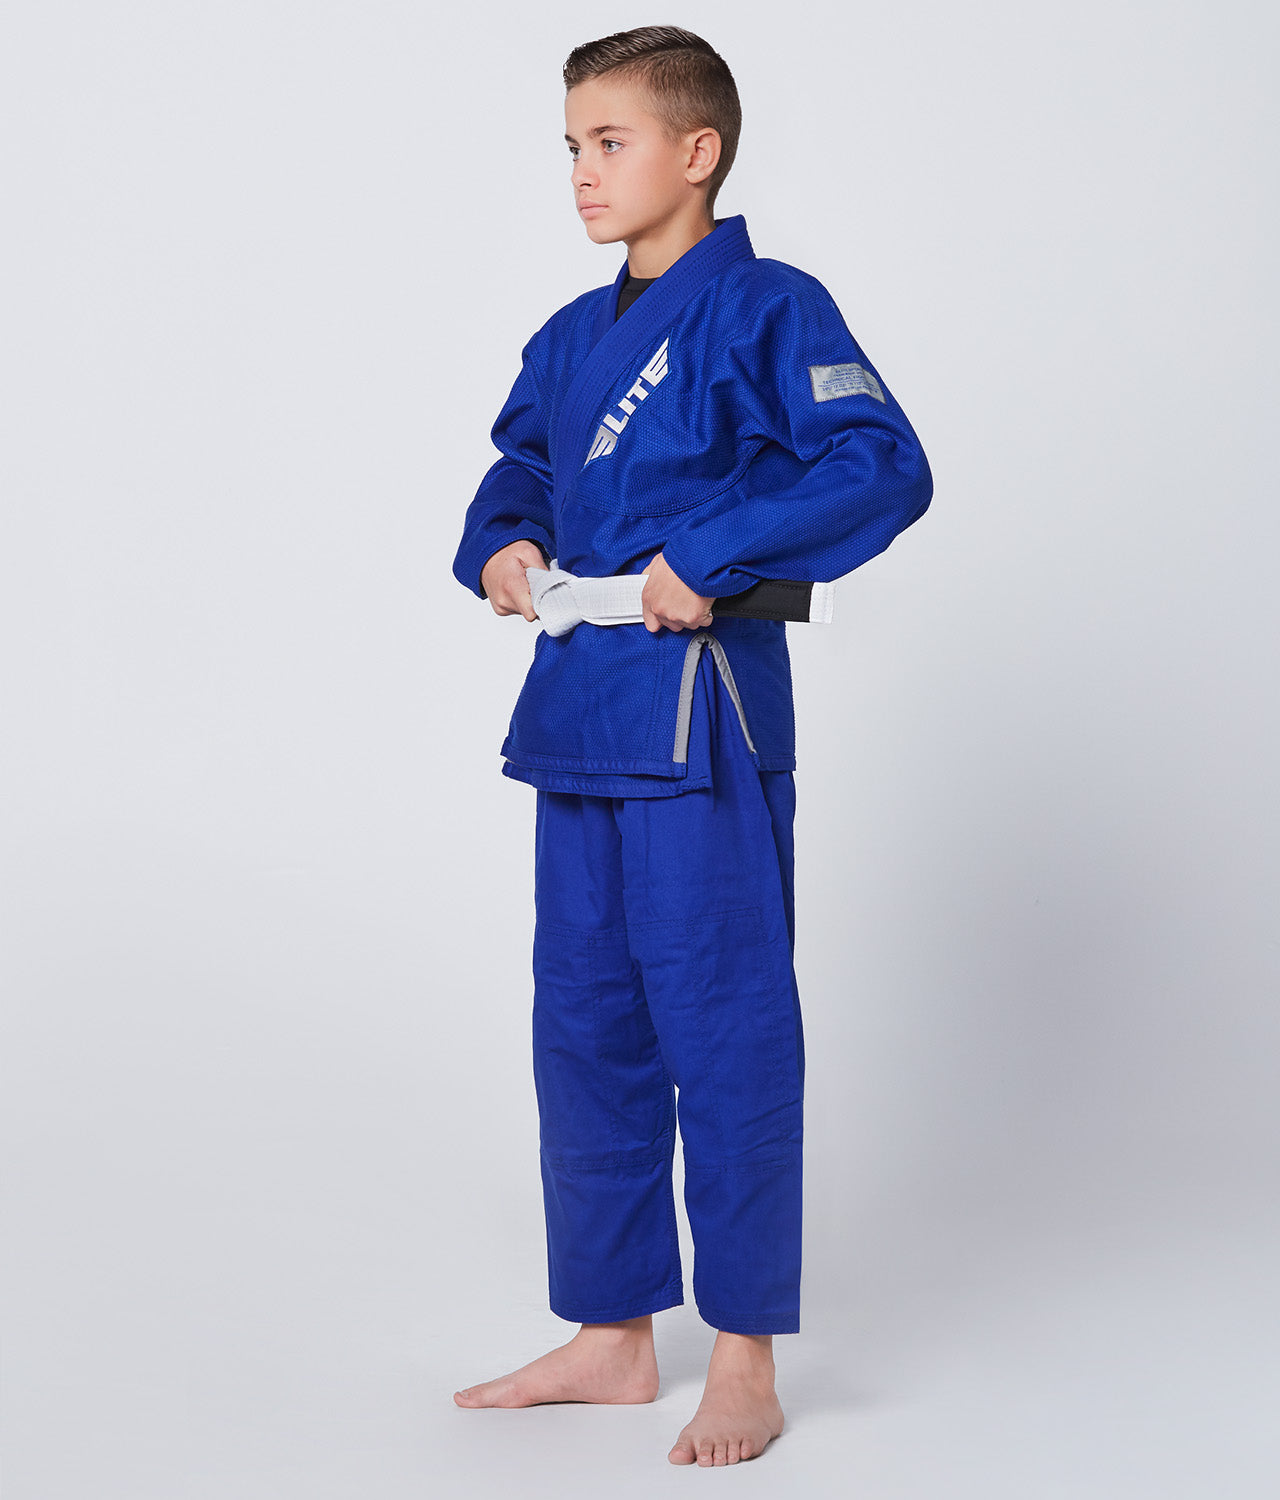 Kids' Core Blue Brazilian Jiu Jitsu BJJ Gi